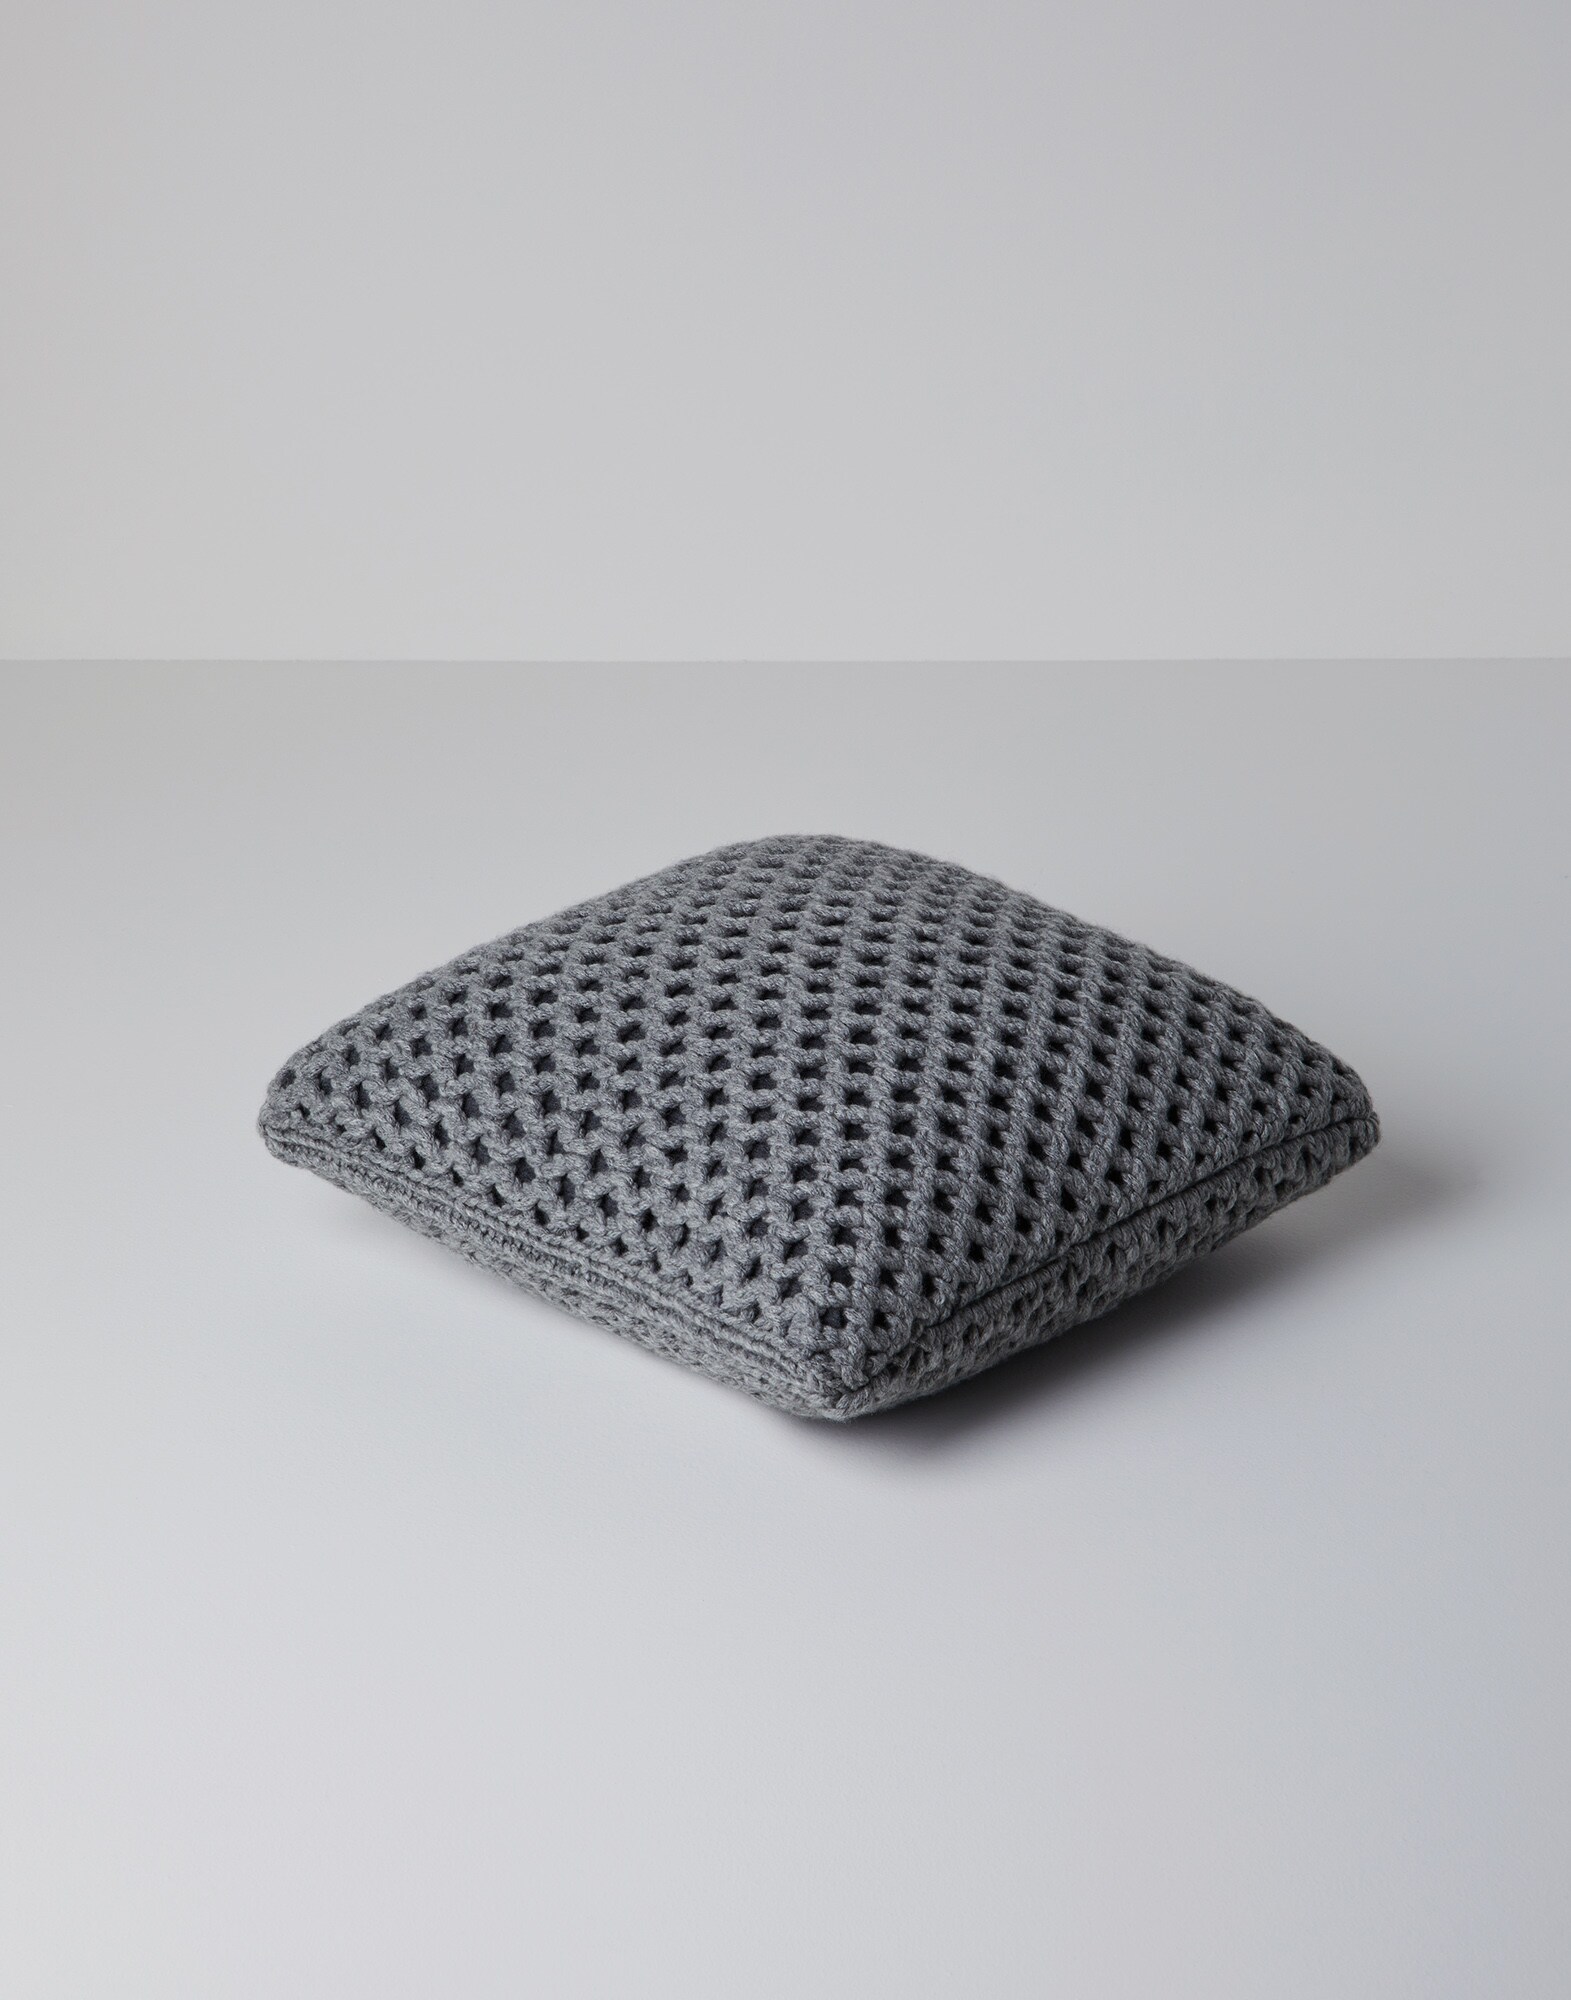 Knit cushion